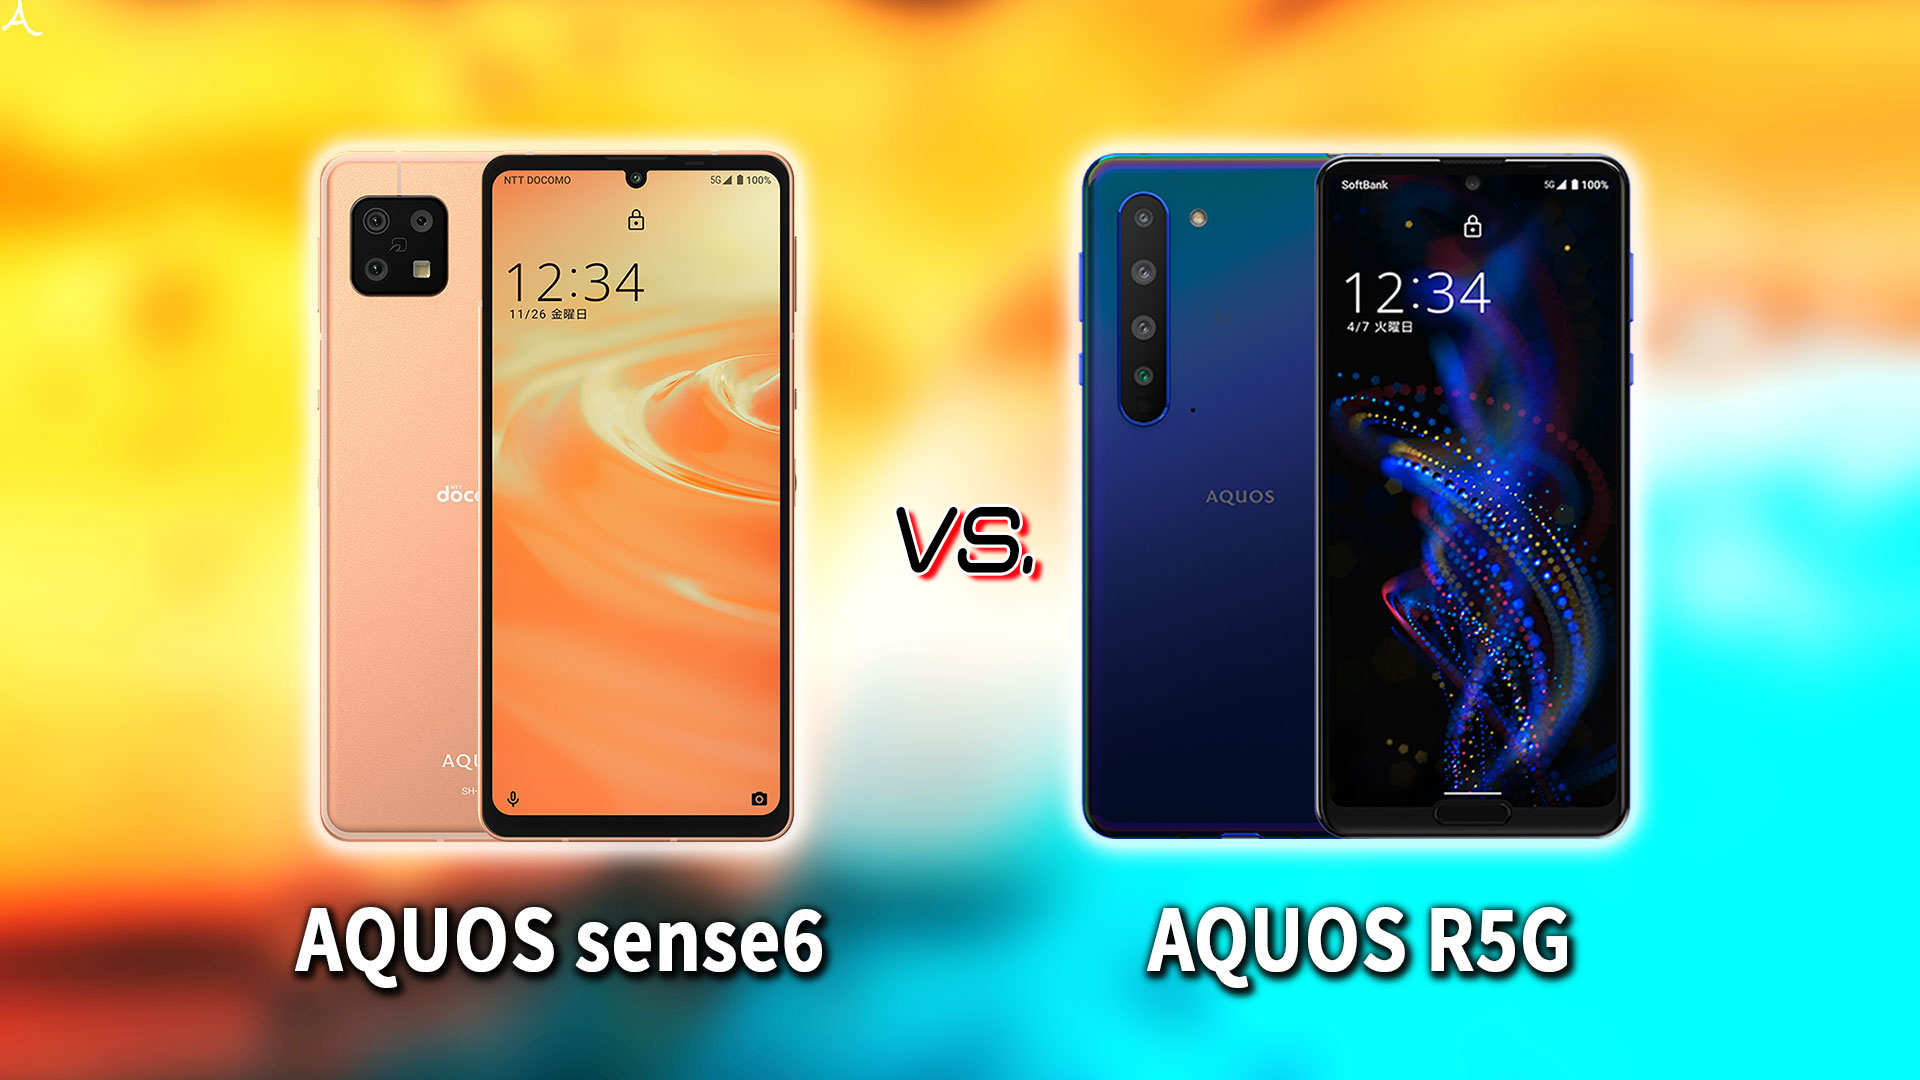 ｢AQUOS sense6｣と｢AQUOS R5G｣の違いを比較：どっちを買う？